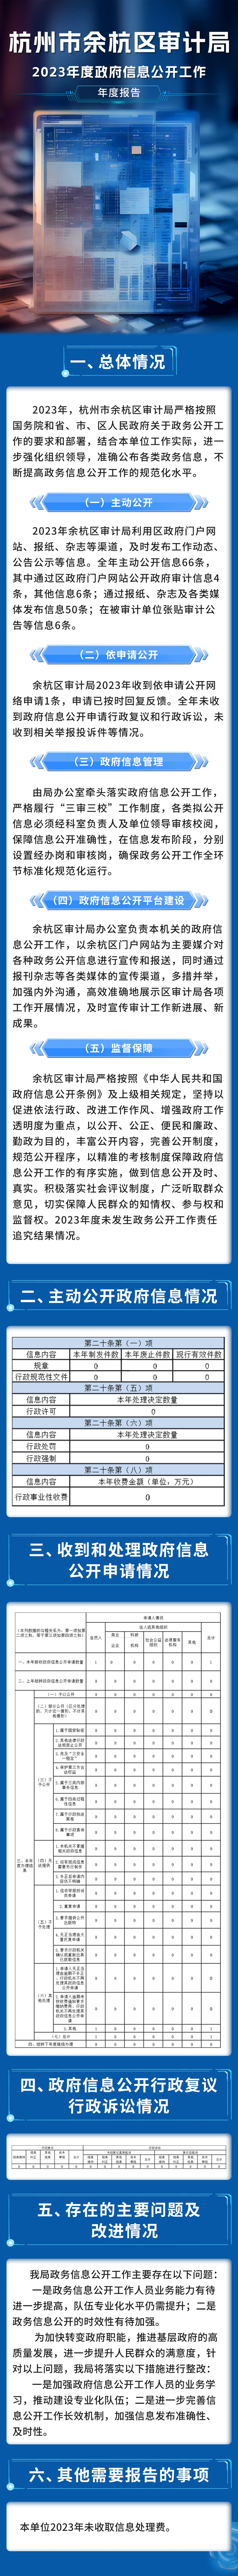 杭州市余杭区审计局2023年政务公开工作年度报告-图解版.jpg